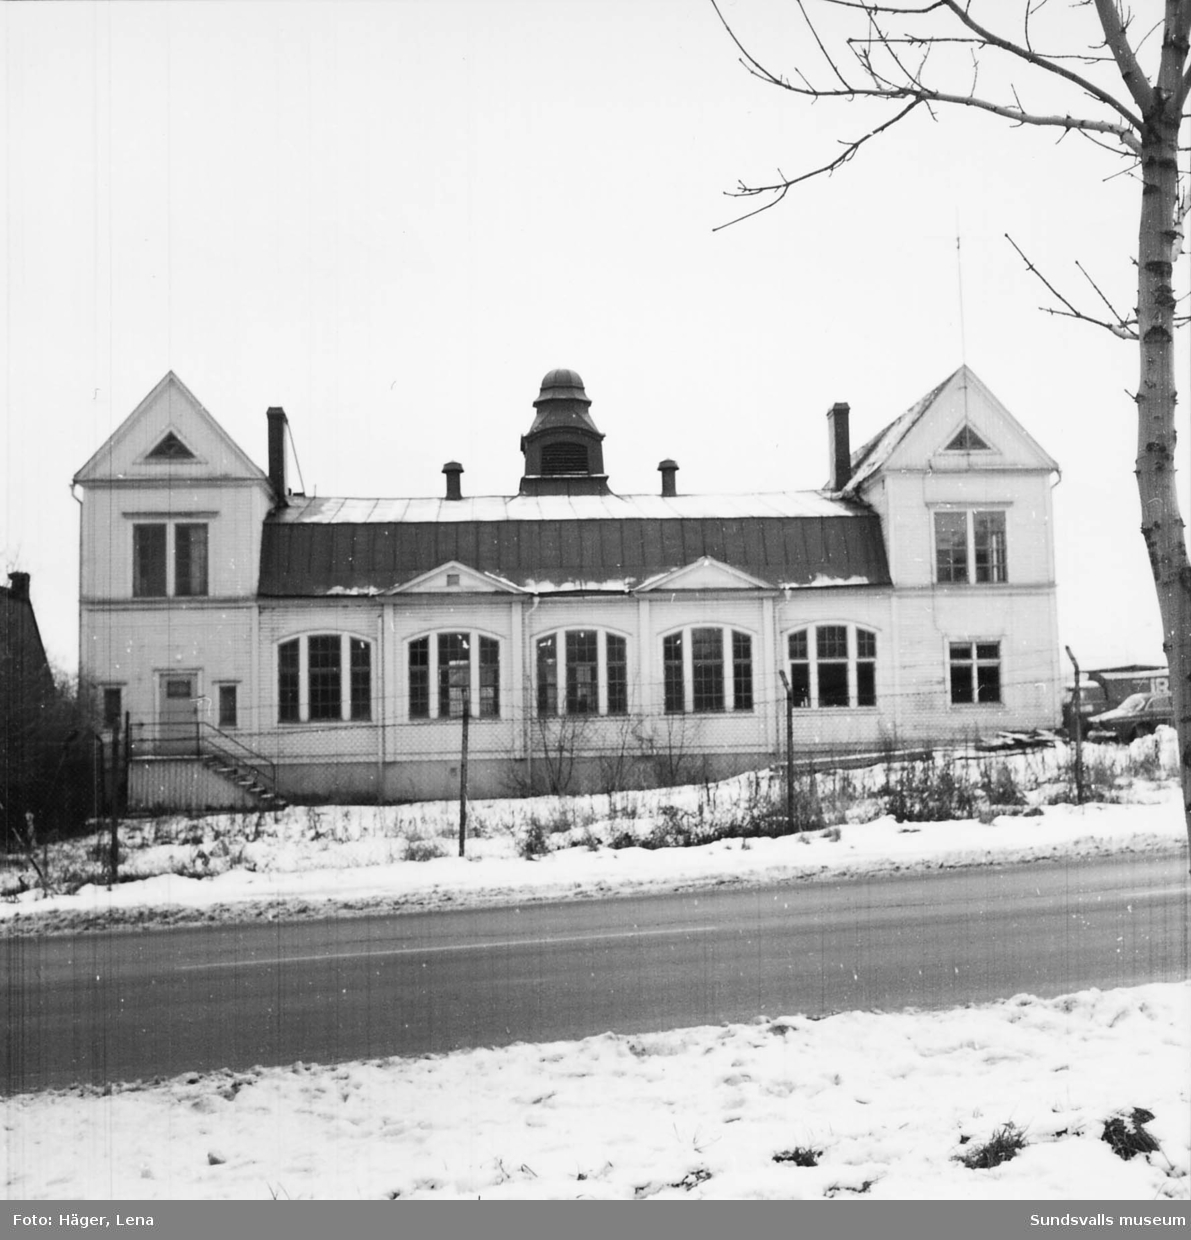 Fotodokumentation av Skönsbergs gamla Folkets hus före rivningen 1986.
Byggnaden användes då som slöjdsal. Dokumentationen gjordes av dåvarande byggnadsantikvarie Lena Häger. I dokumentationen finns även interiörer.